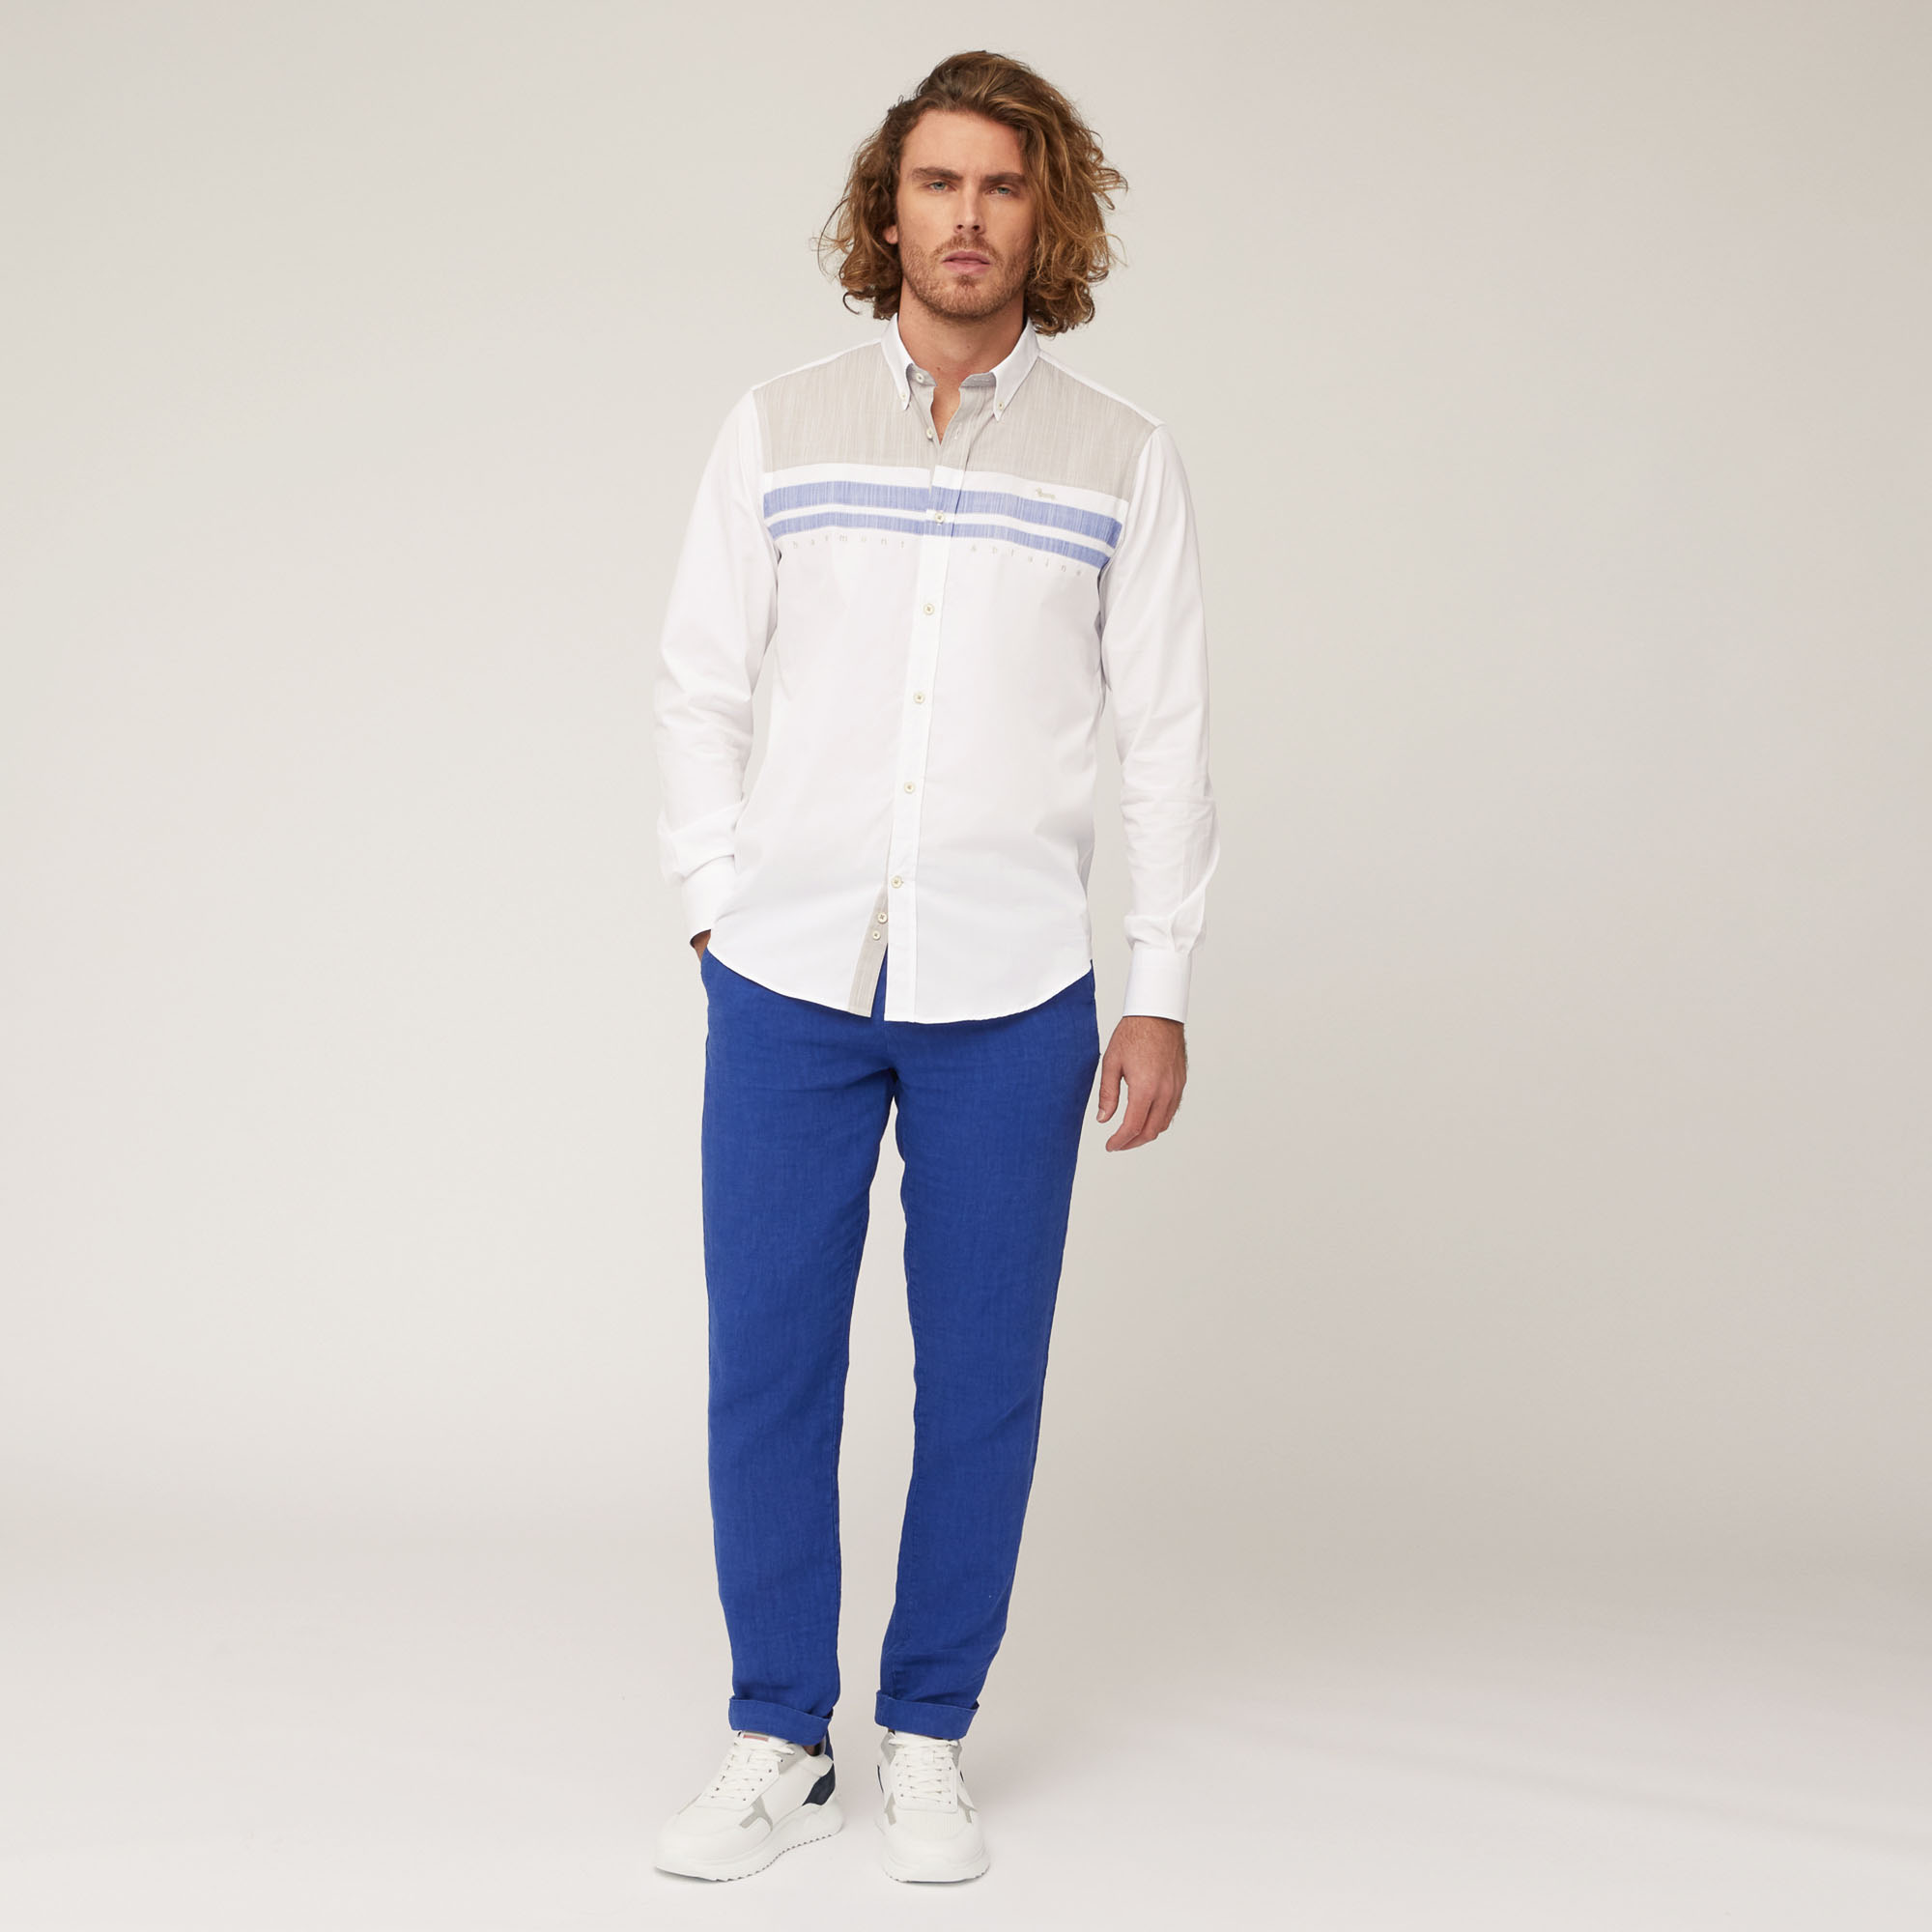 Camisa de algodón con aplicaciones a contraste, Blanco, large image number 3